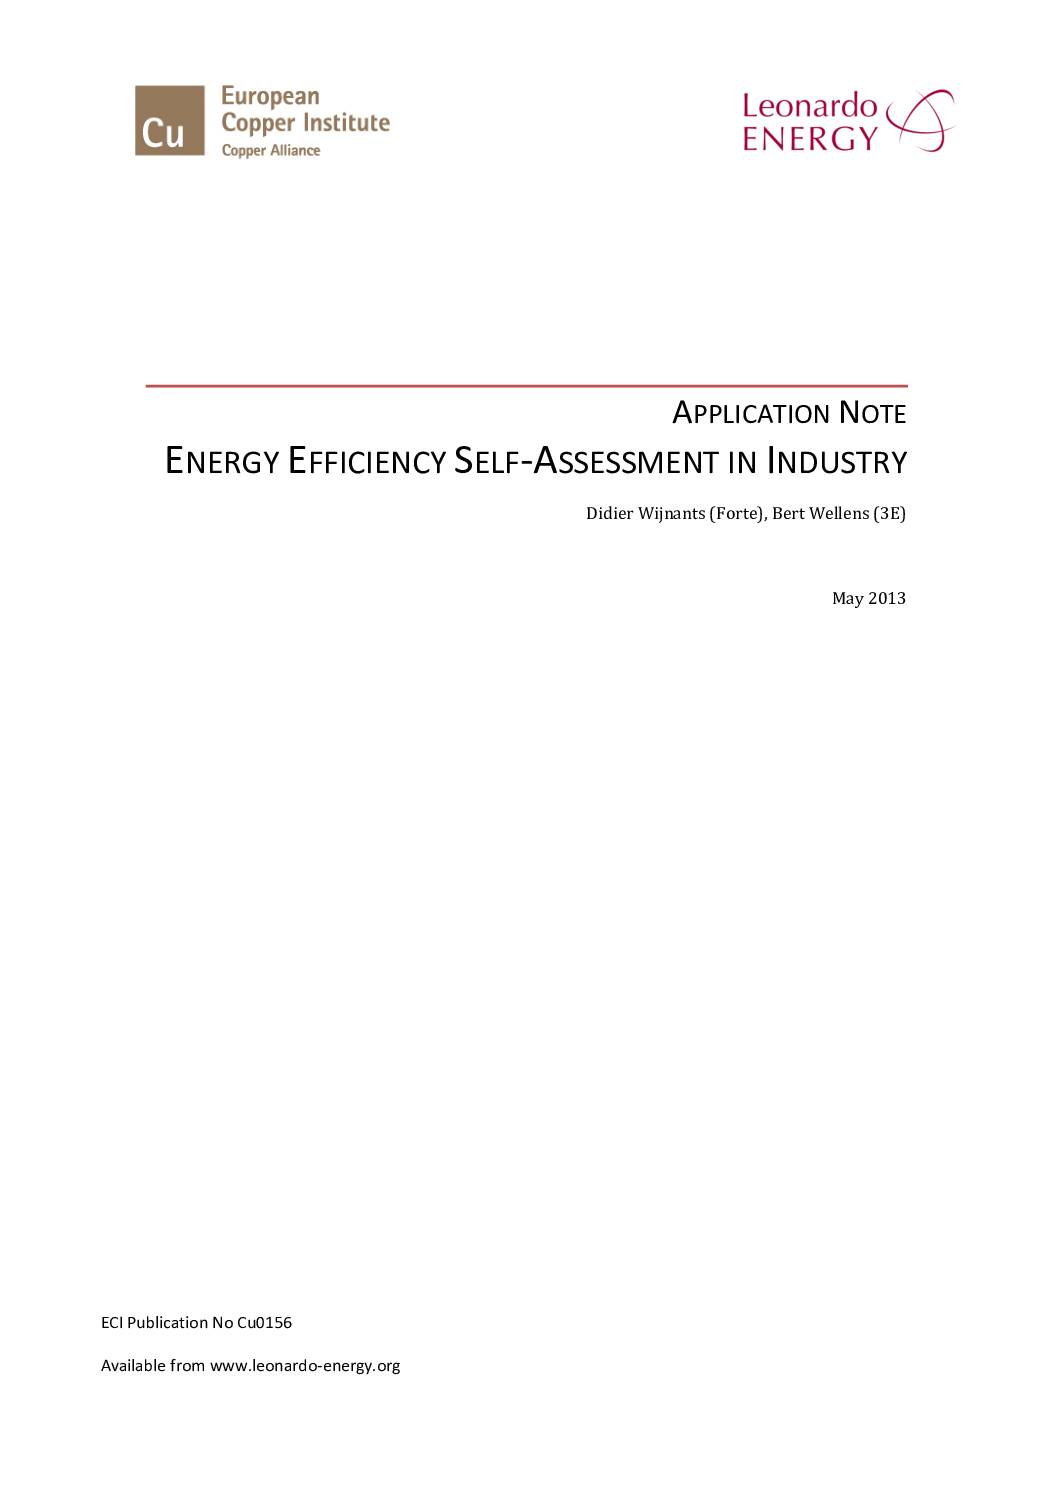 Energy Efficiency Self-Assessment in Industry